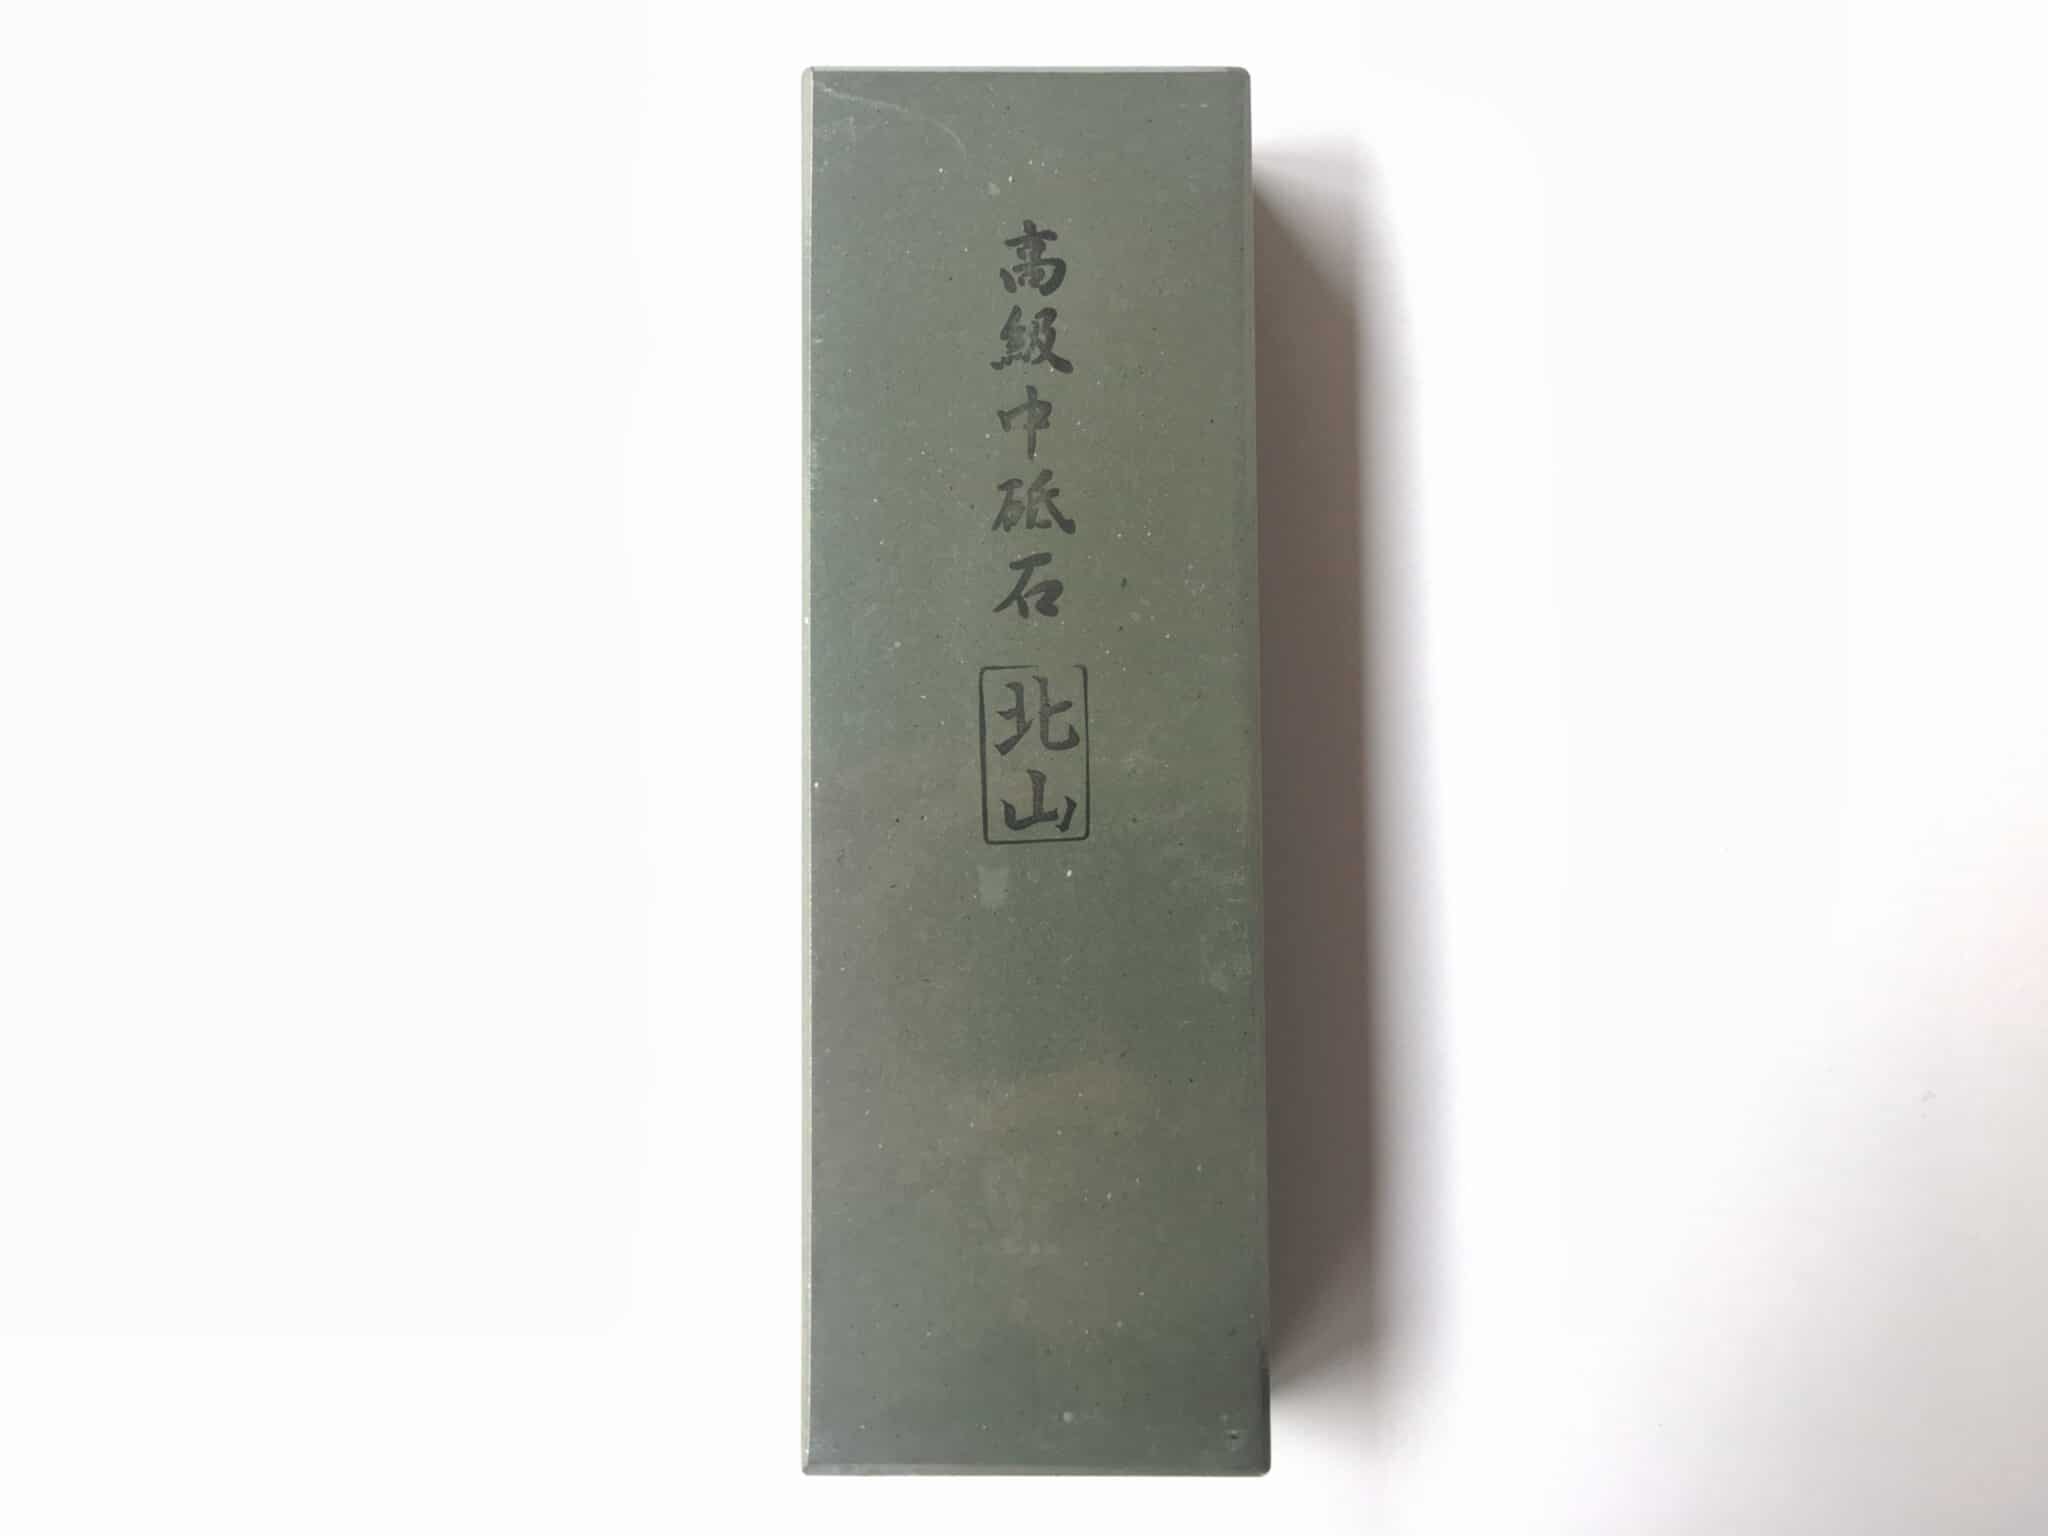 IMANISHI SEITO #1000 / #6000 + #10000 JAPANESE WHETSTONE +